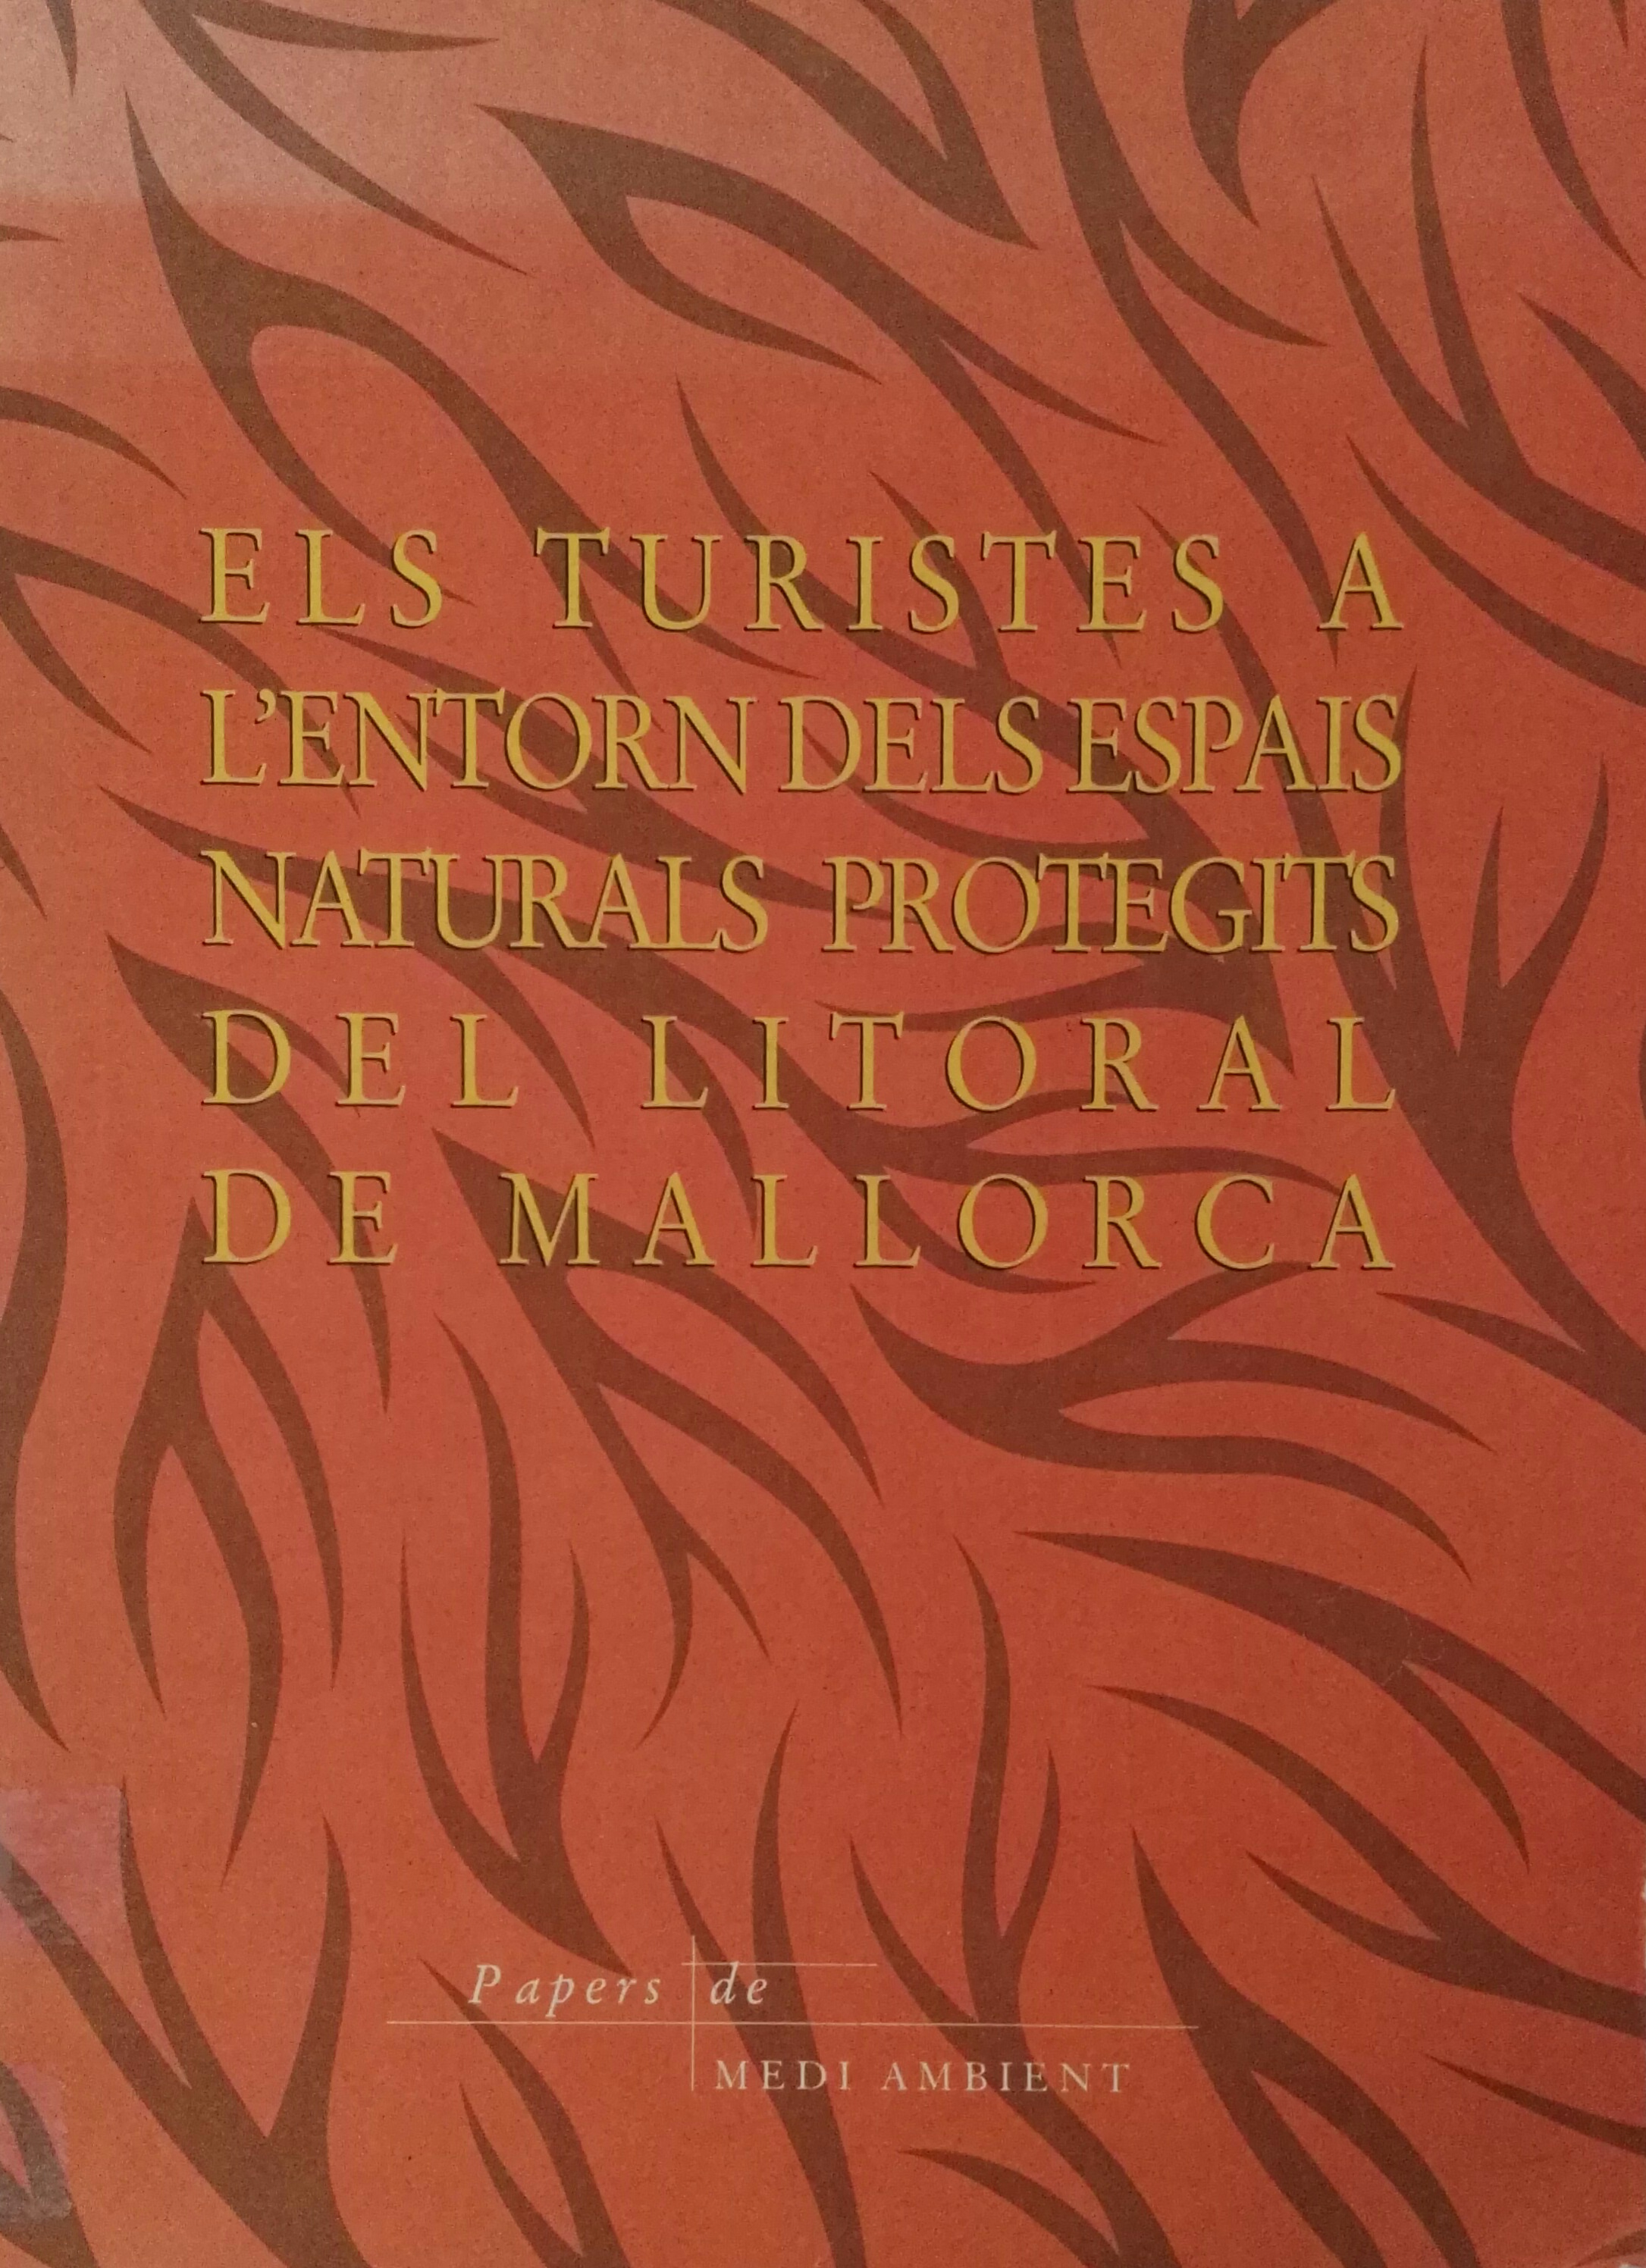 Imagen de portada del libro Els turistes a l'entorn dels espais naturals protegits del litoral de Mallorca